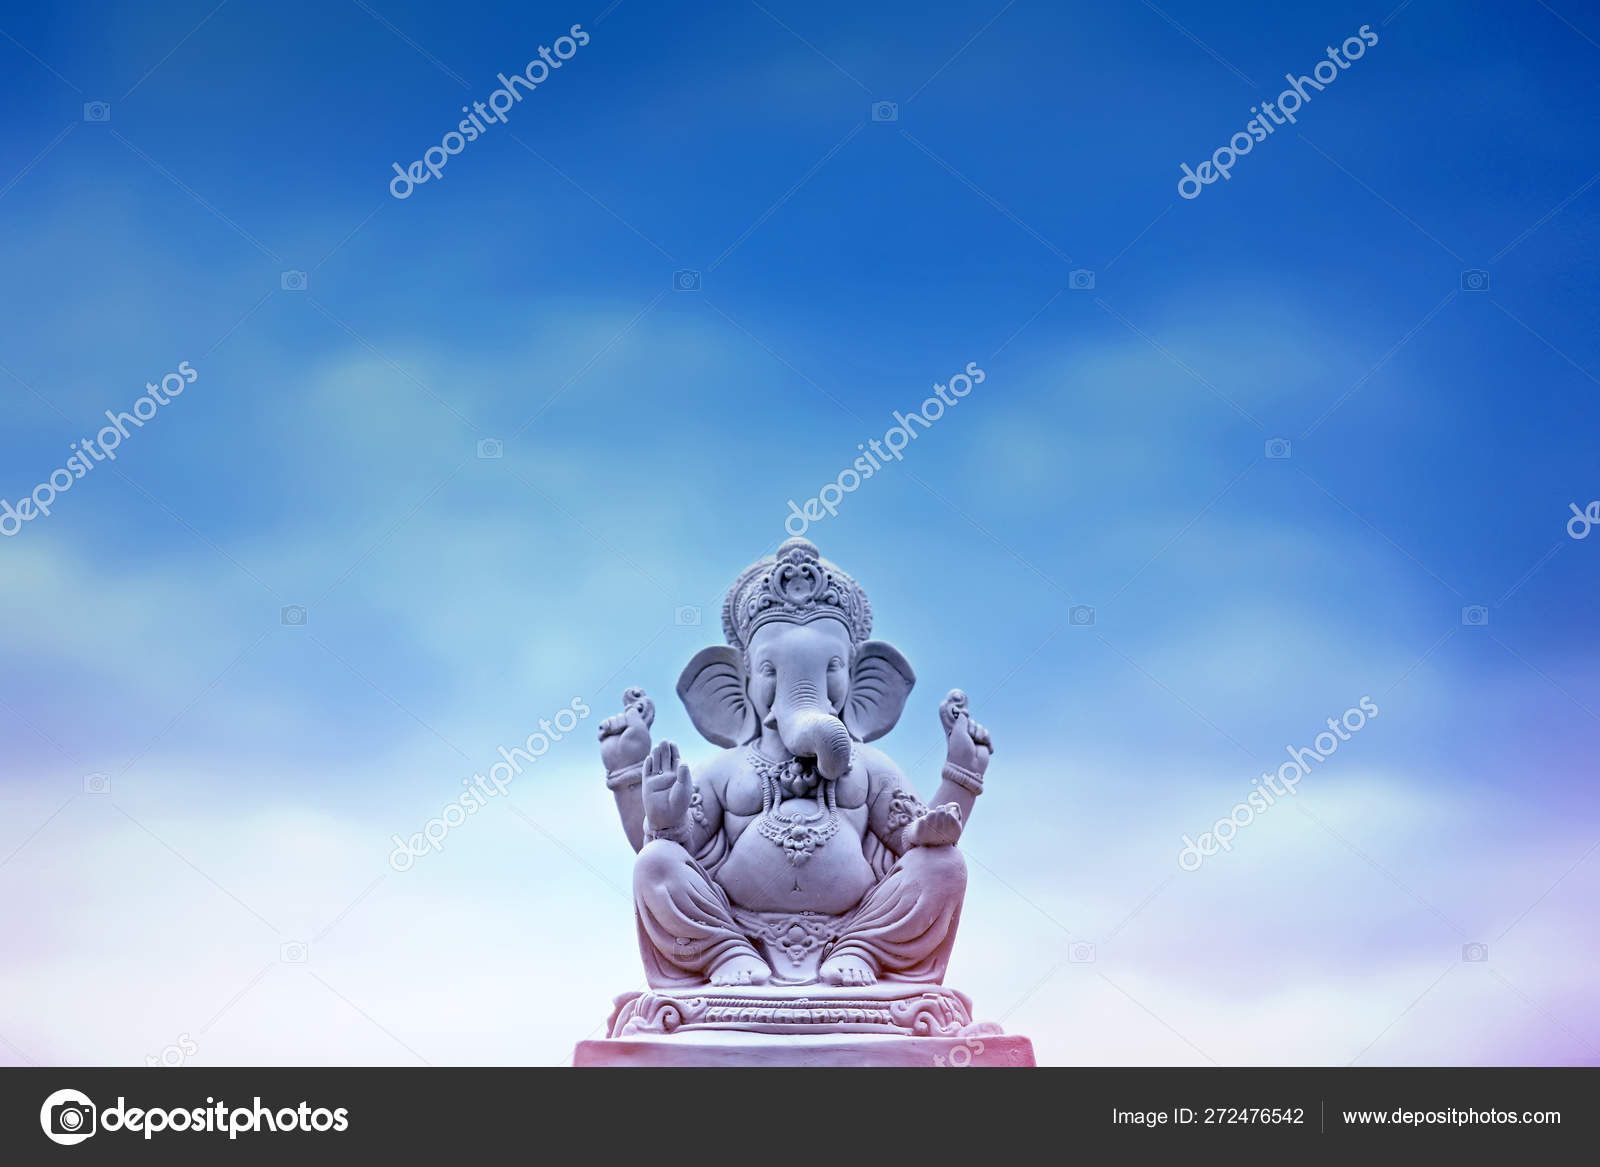 Ganesha invitation Stock Photos, Royalty Free Ganesha invitation Images |  Depositphotos